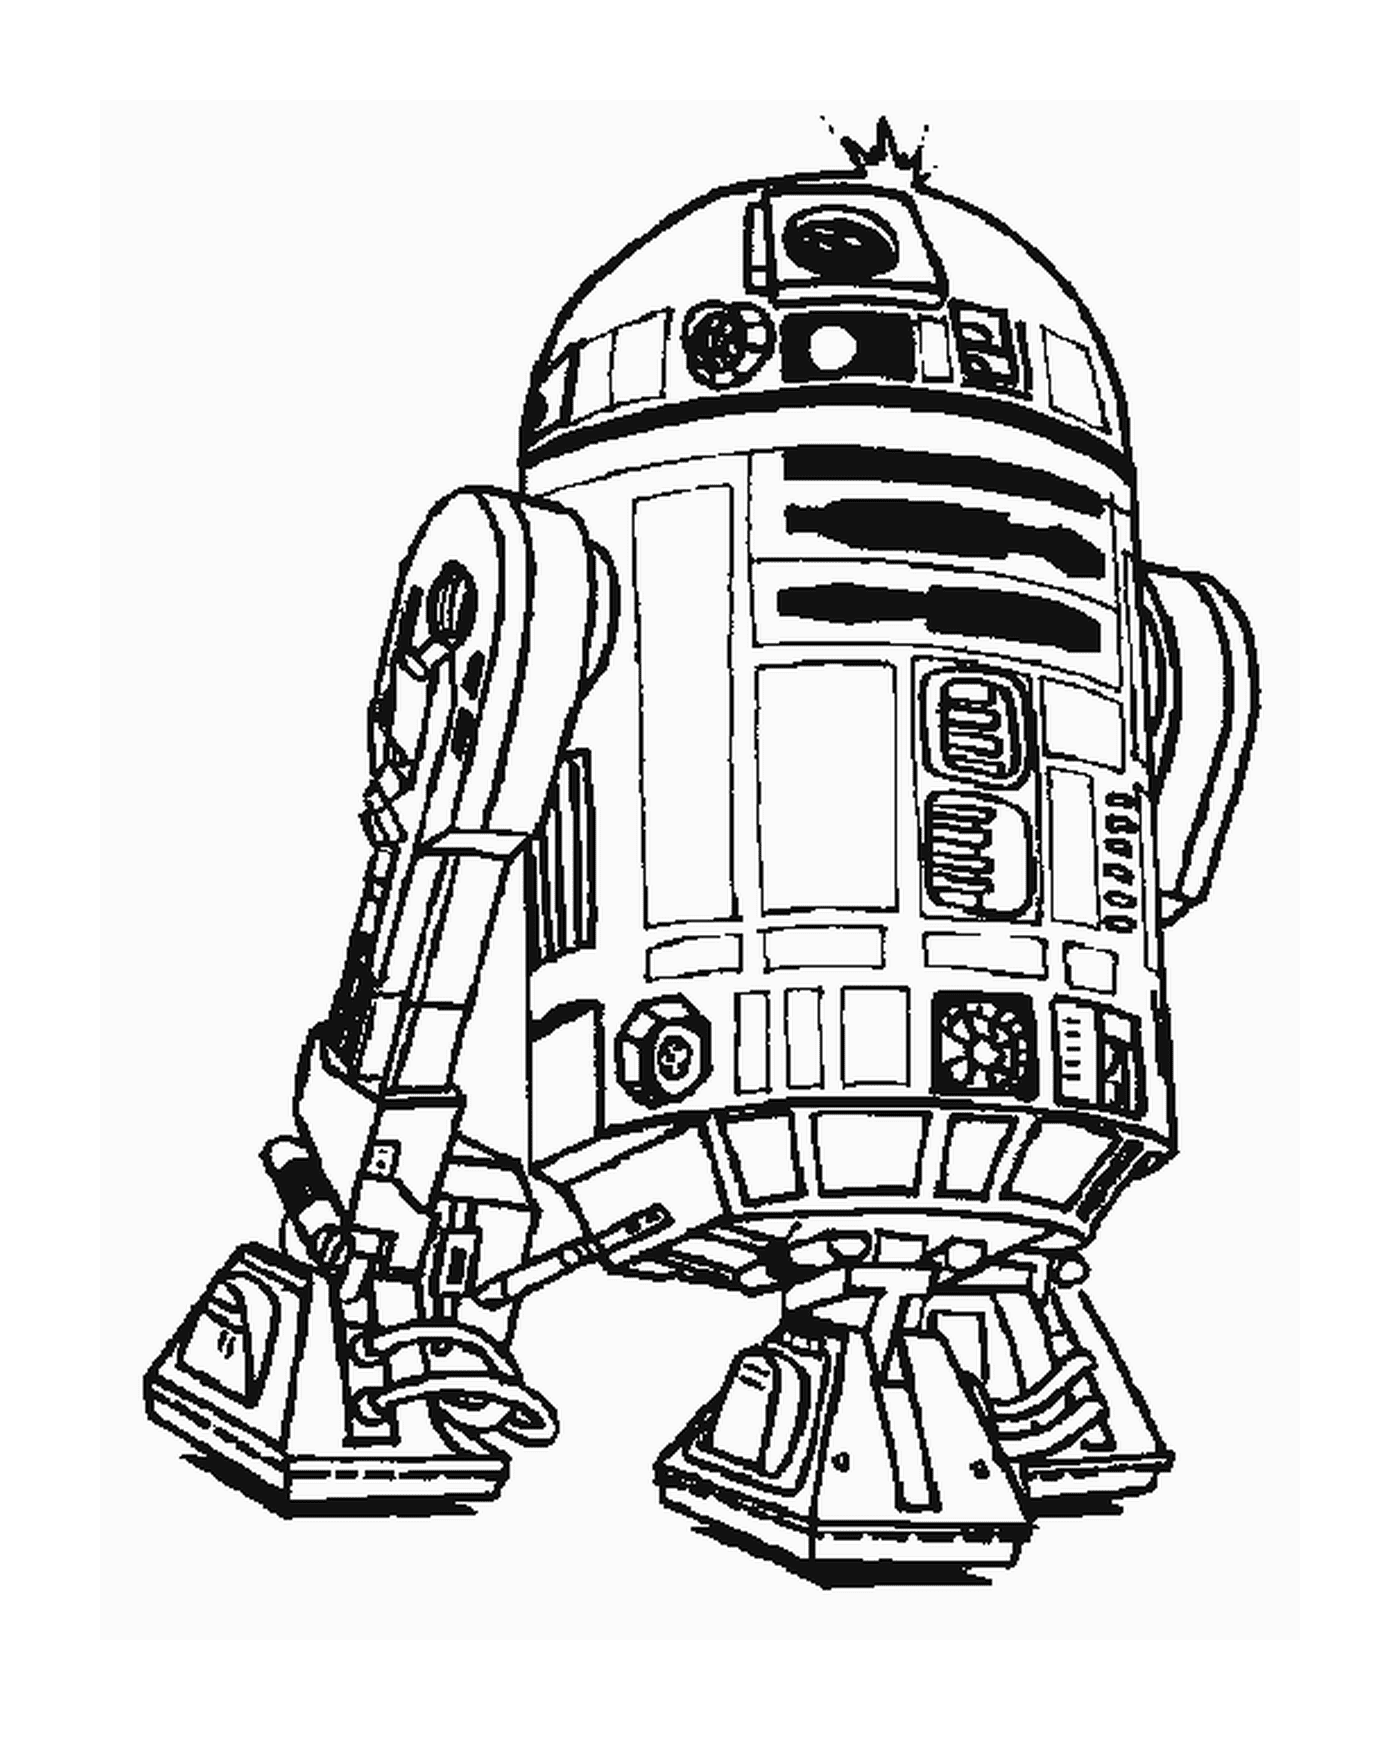   Dessin d'un robot R2-D2 